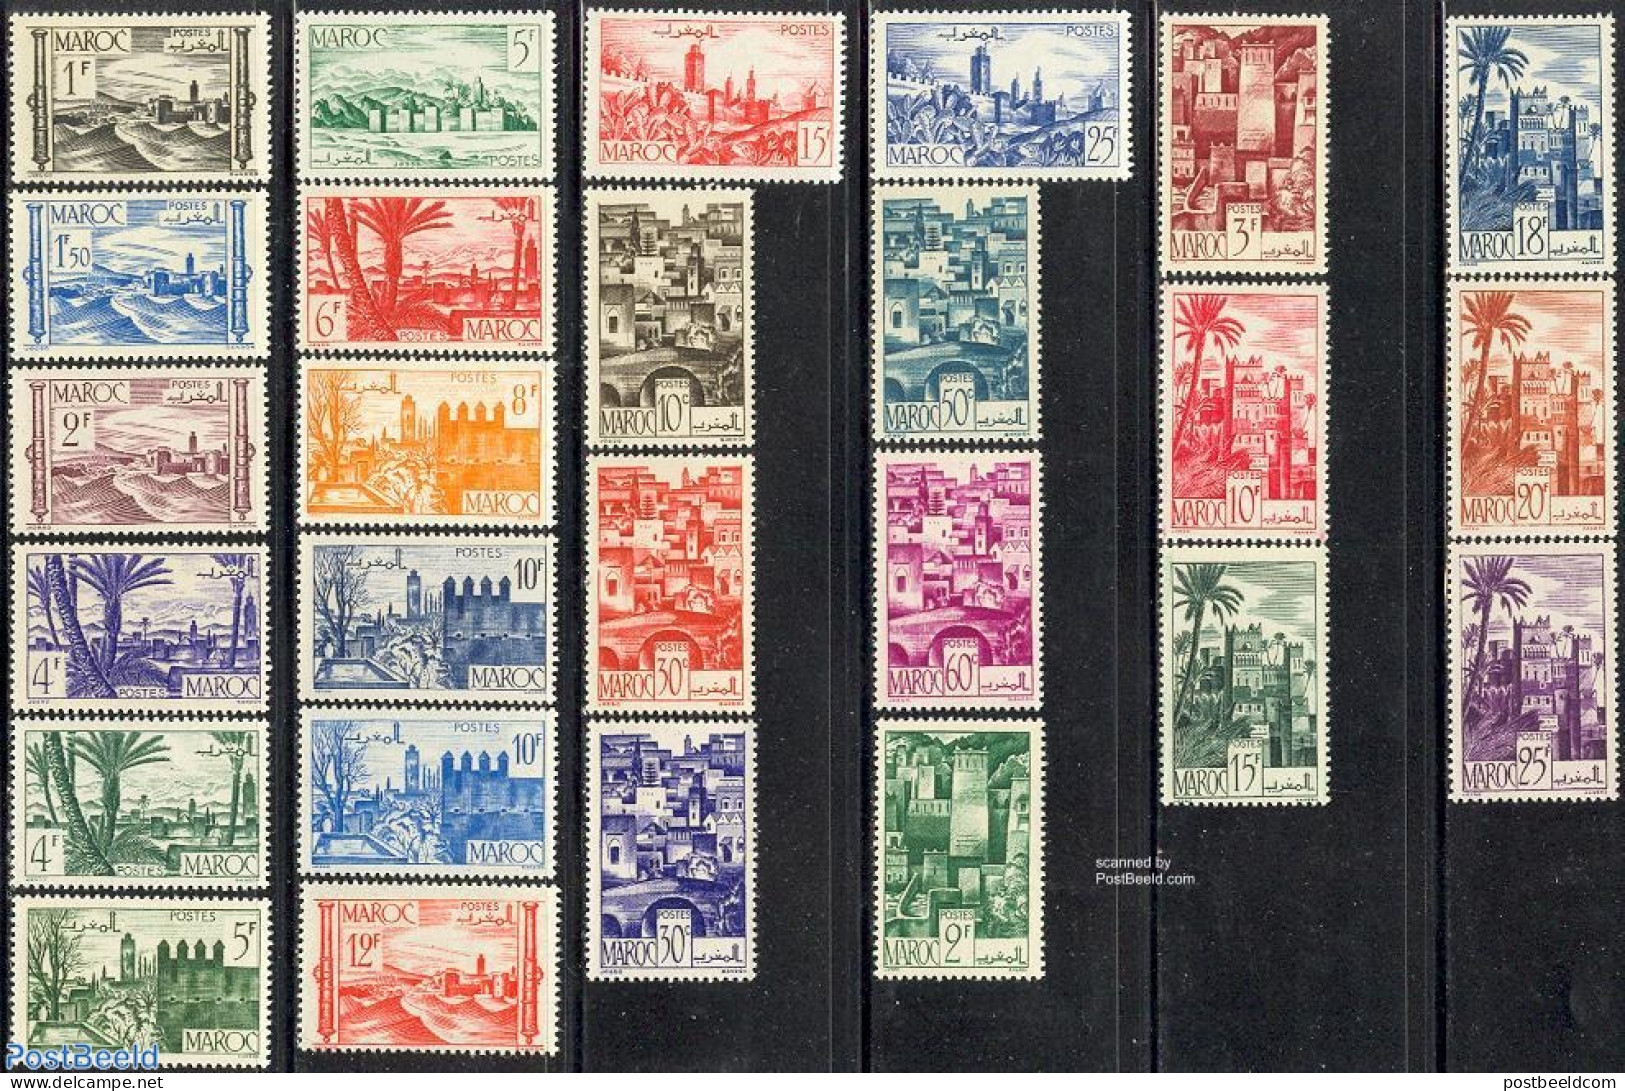 Morocco 1947 Definitives 26v, Mint NH, Art - Castles & Fortifications - Castillos